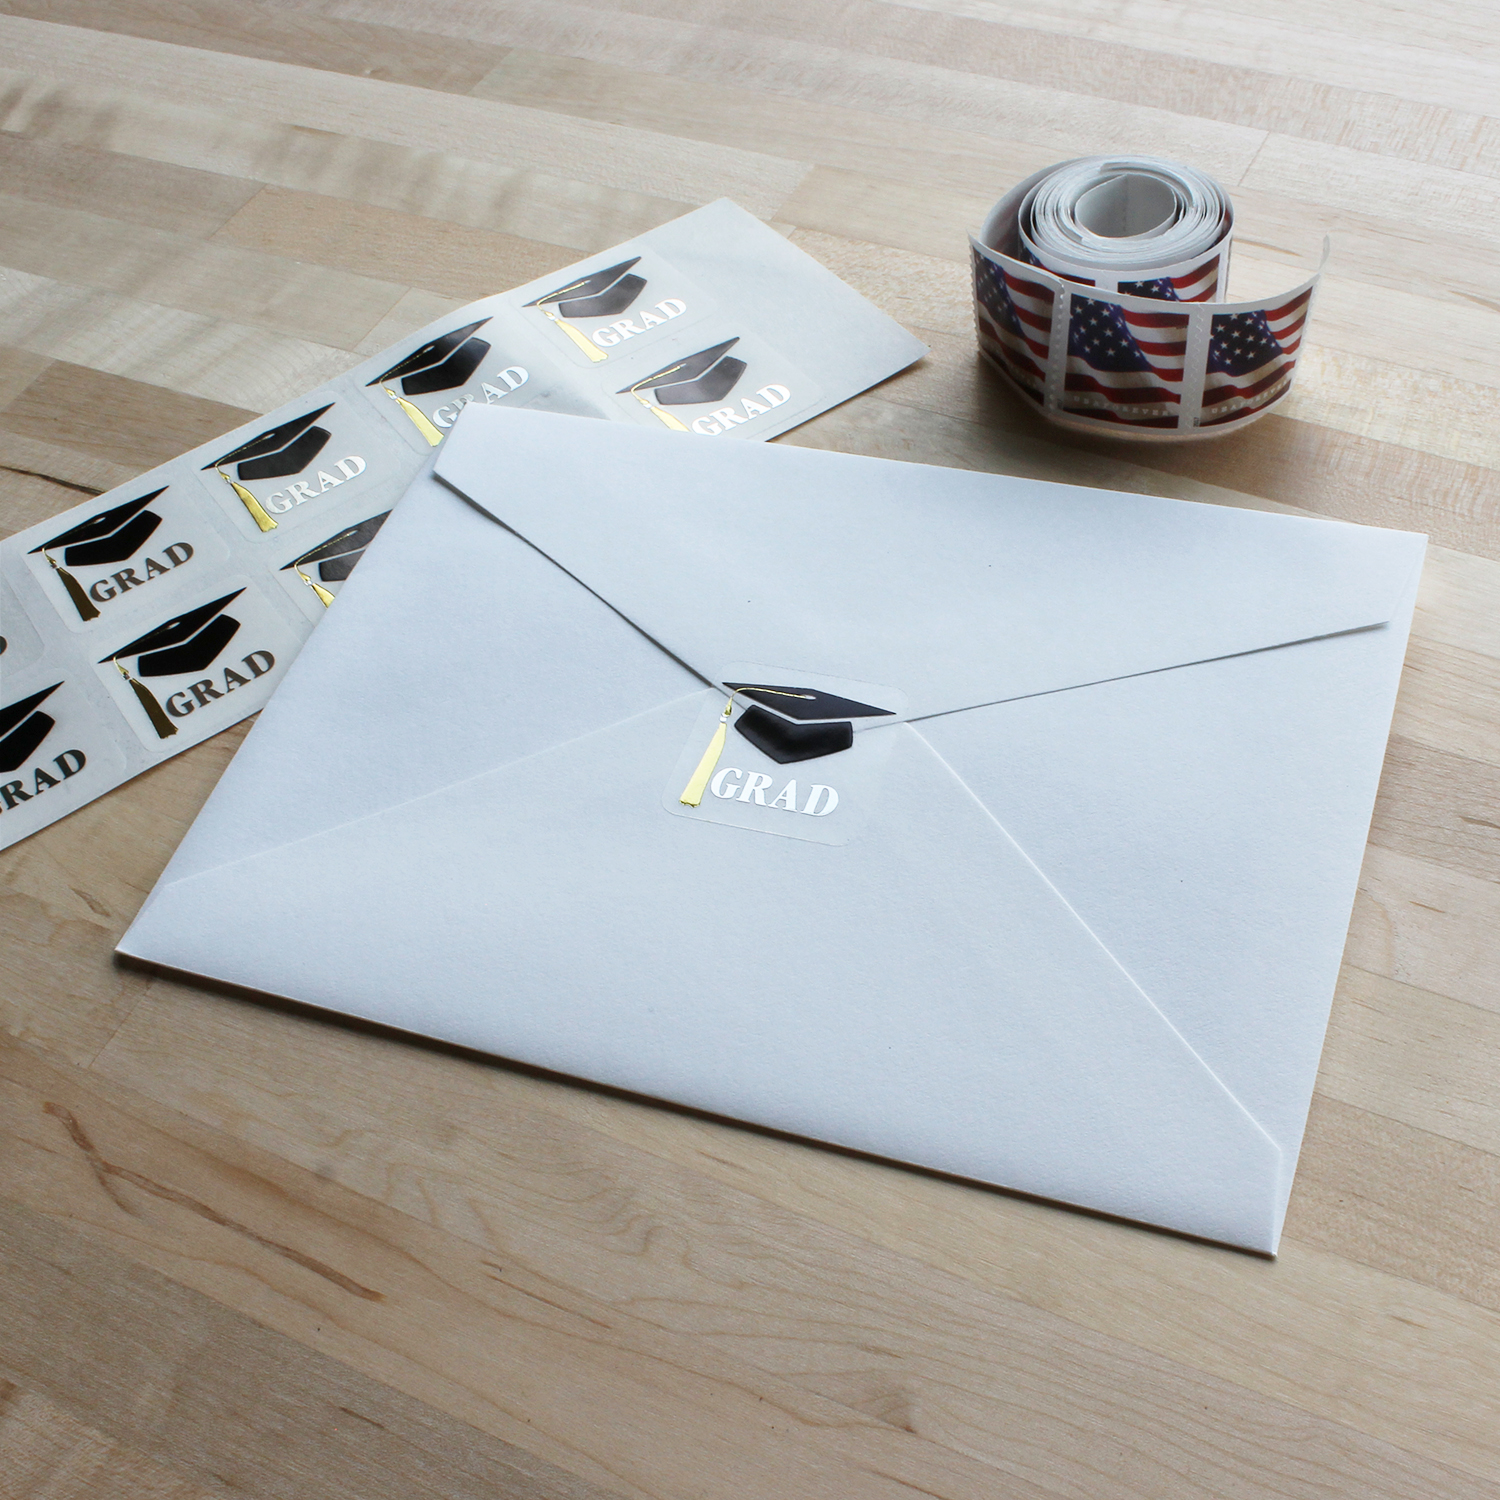 Envelope Seals - Designs for Envelope Seals